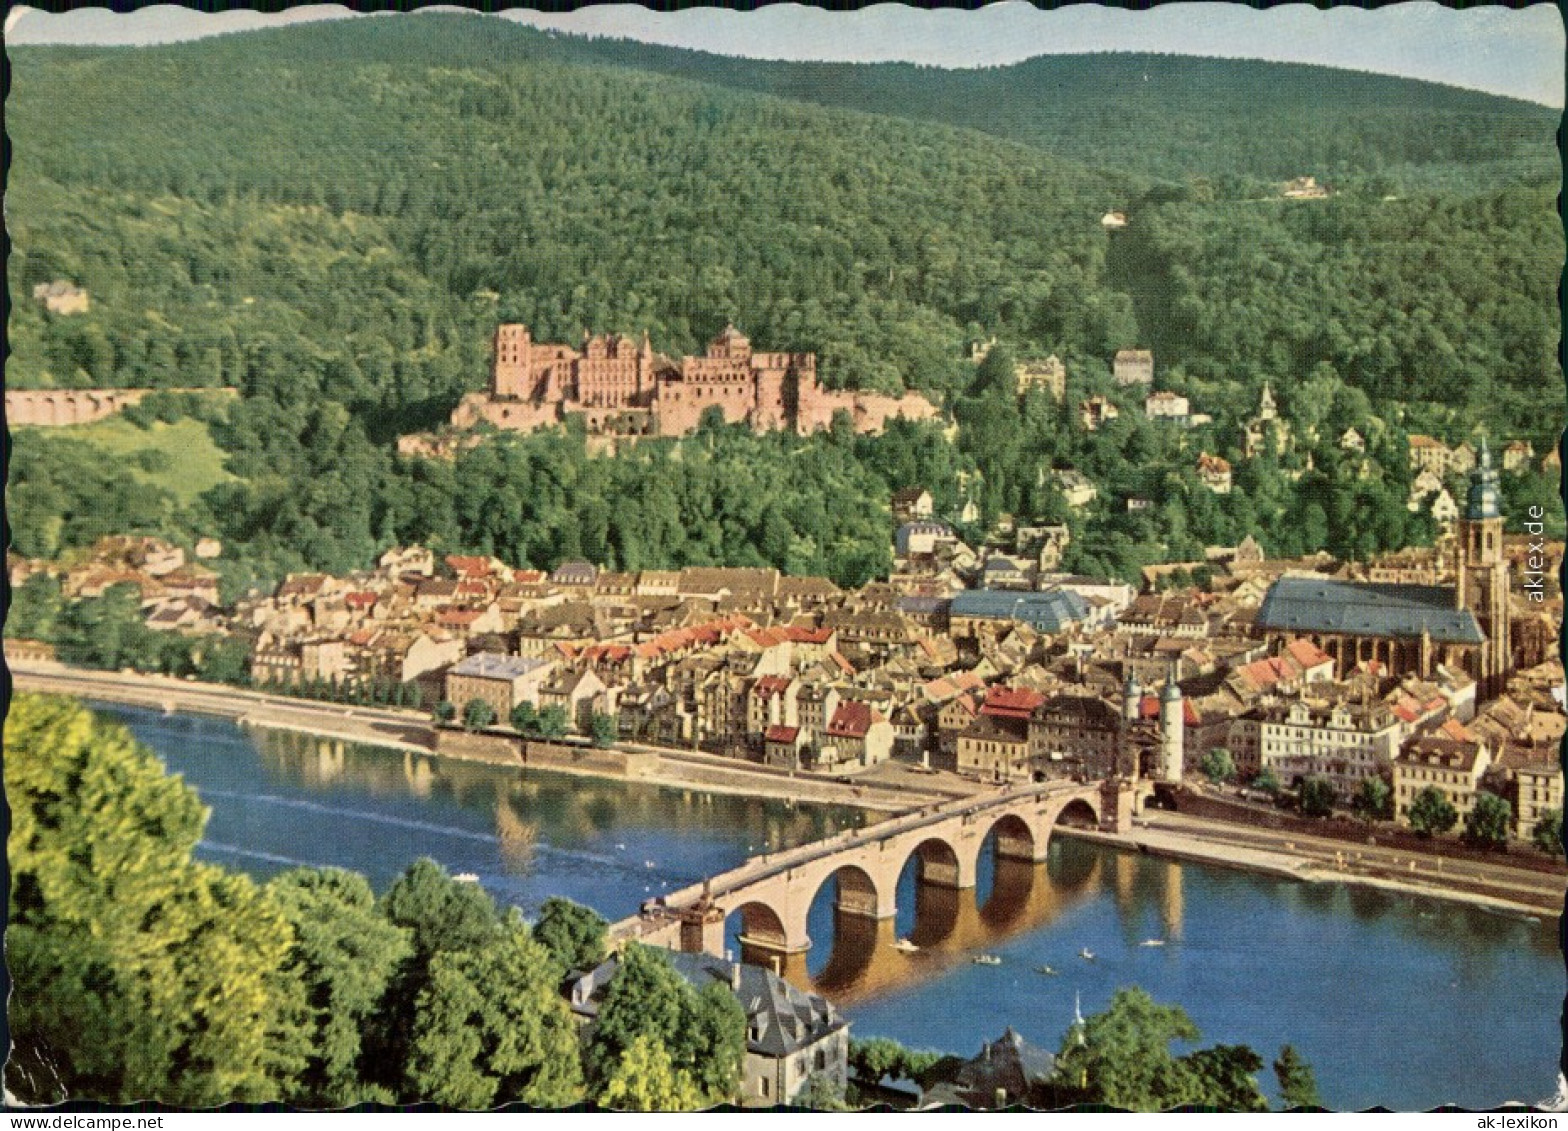 Ansichtskarte Heidelberg Blick Vom Philosophenweg 1985 - Heidelberg